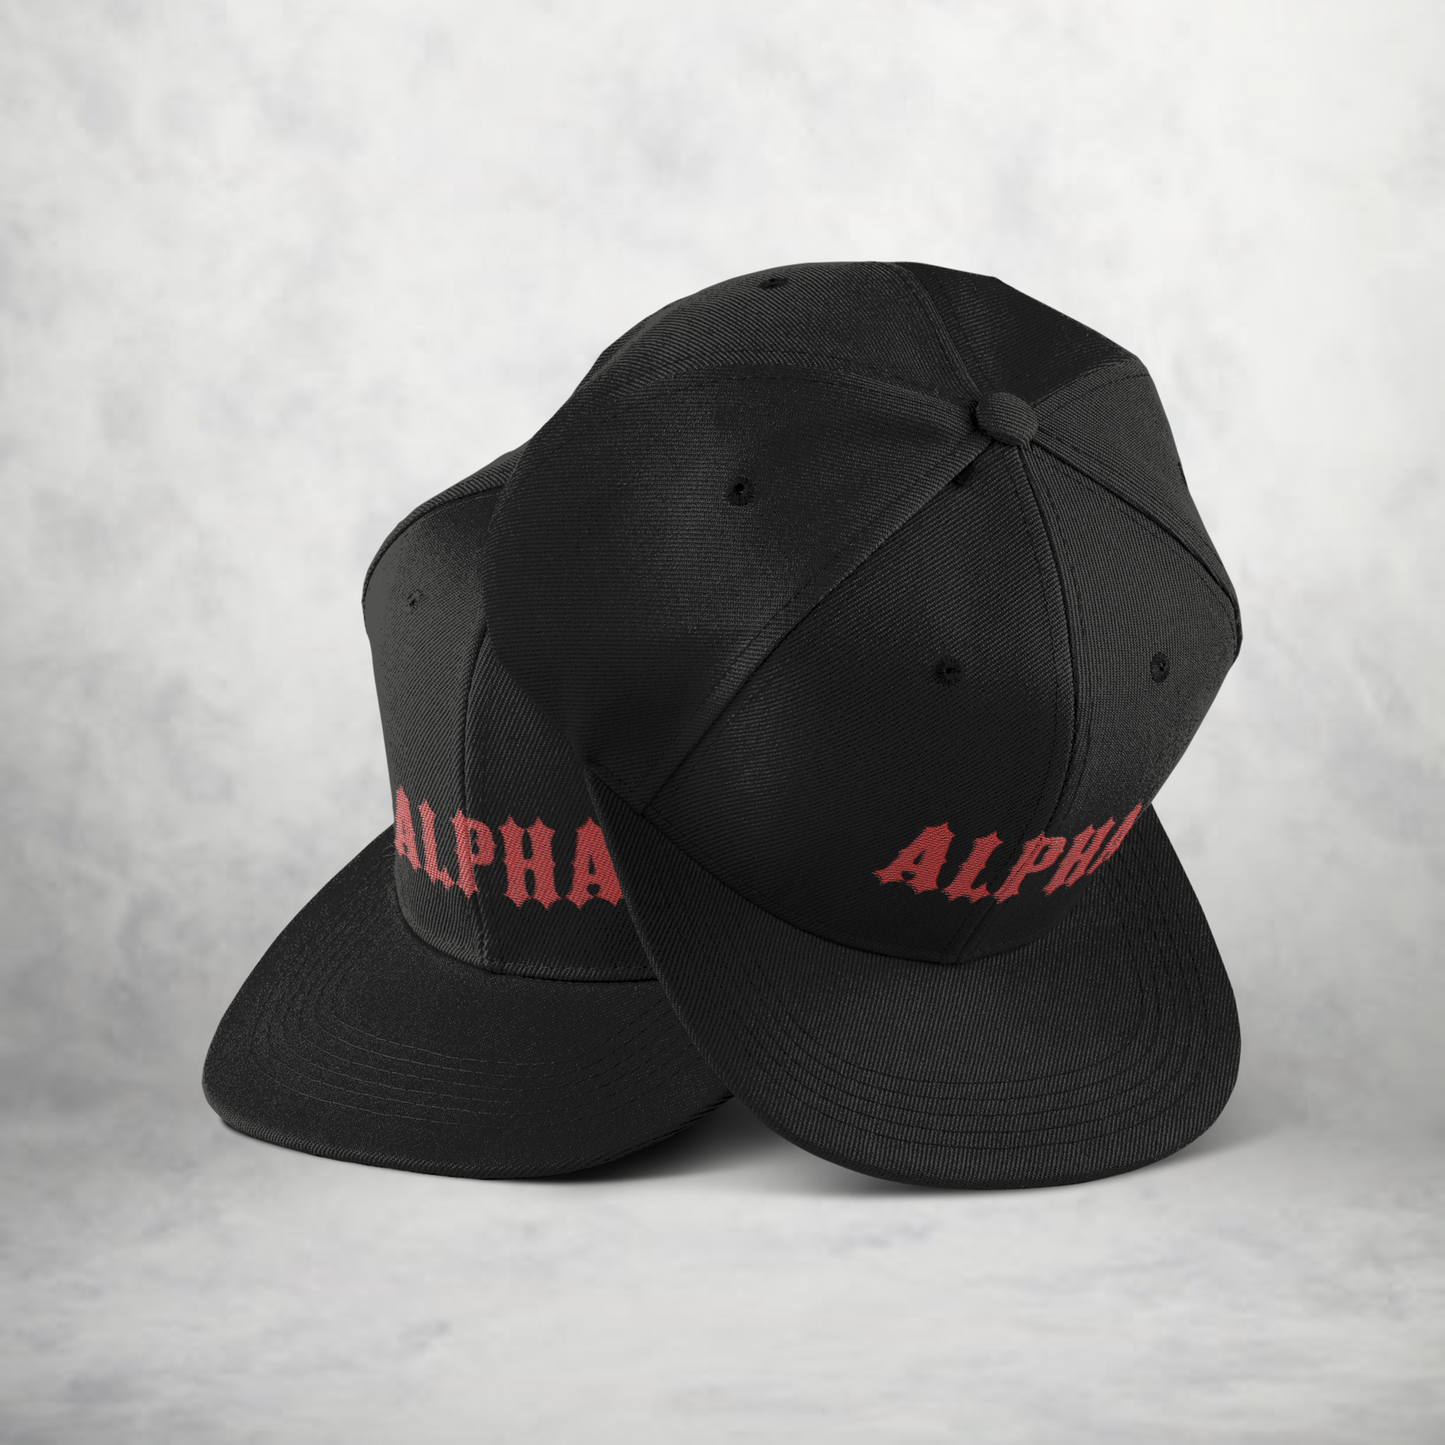 Alpha, Snapback Cap